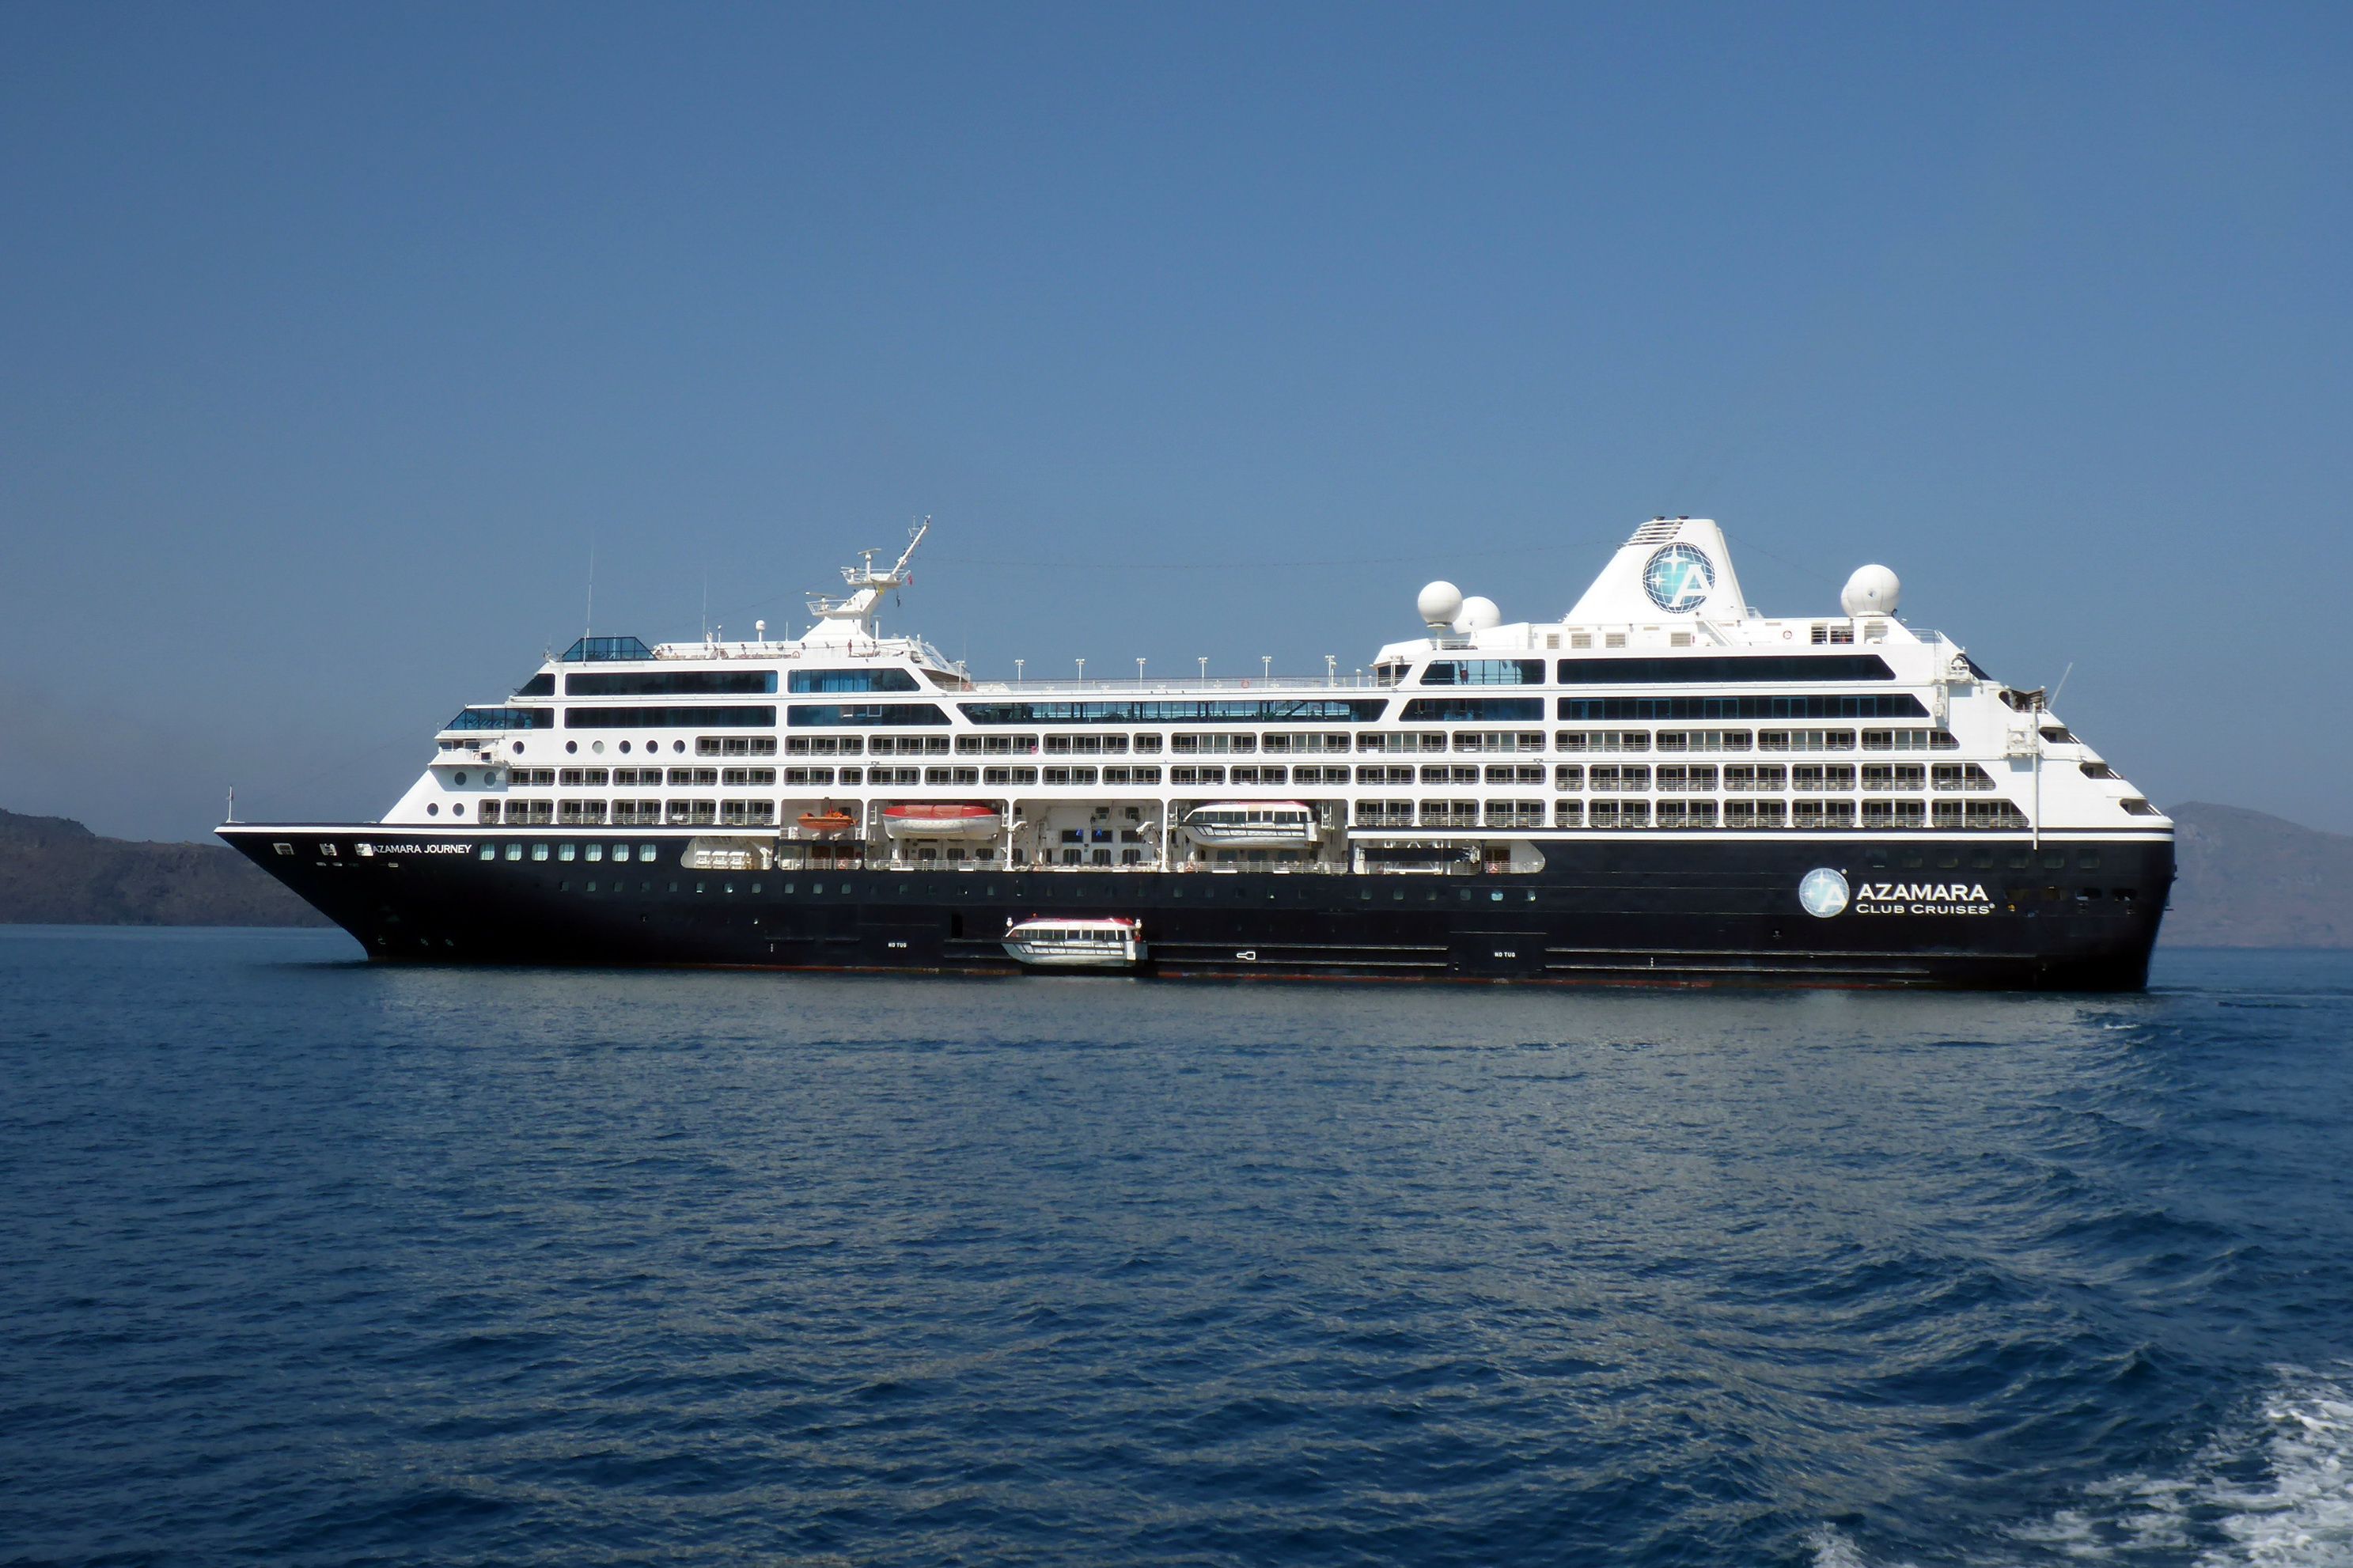 azamara cruise ship wikipedia